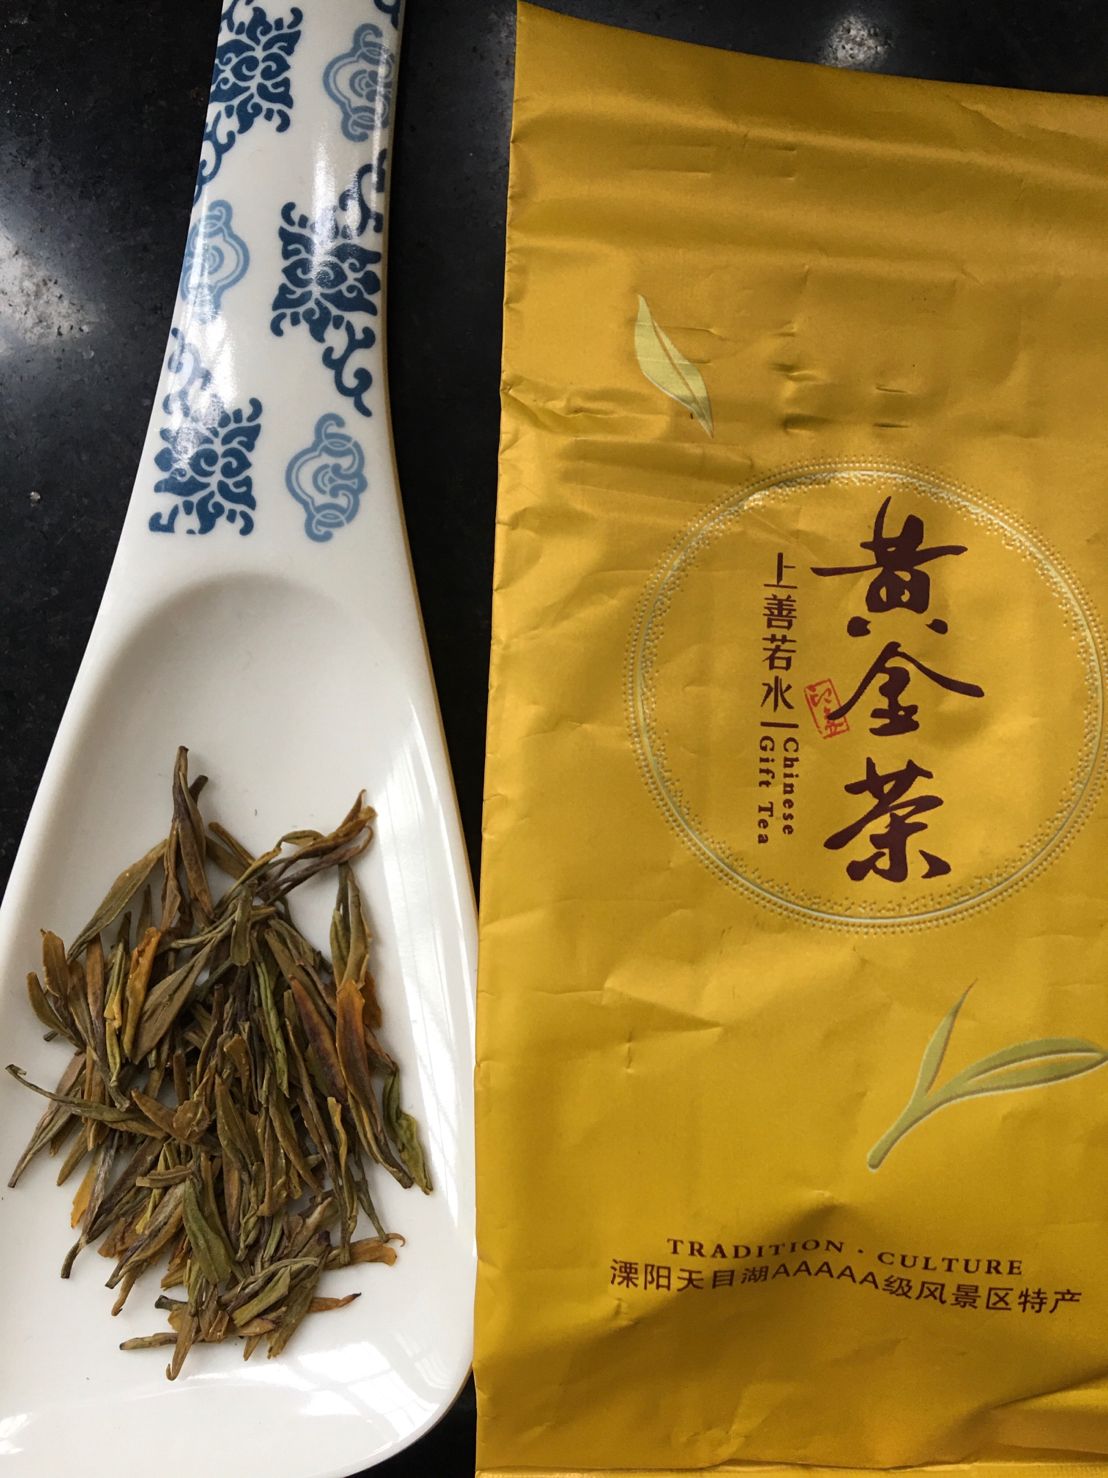 Lì Yáng Tiān Mù Hú Jīn Yá Bái Chá, 溧阳天目胡金牙白茶 , Liyang Tianmu Lake Golden Bud White Tea